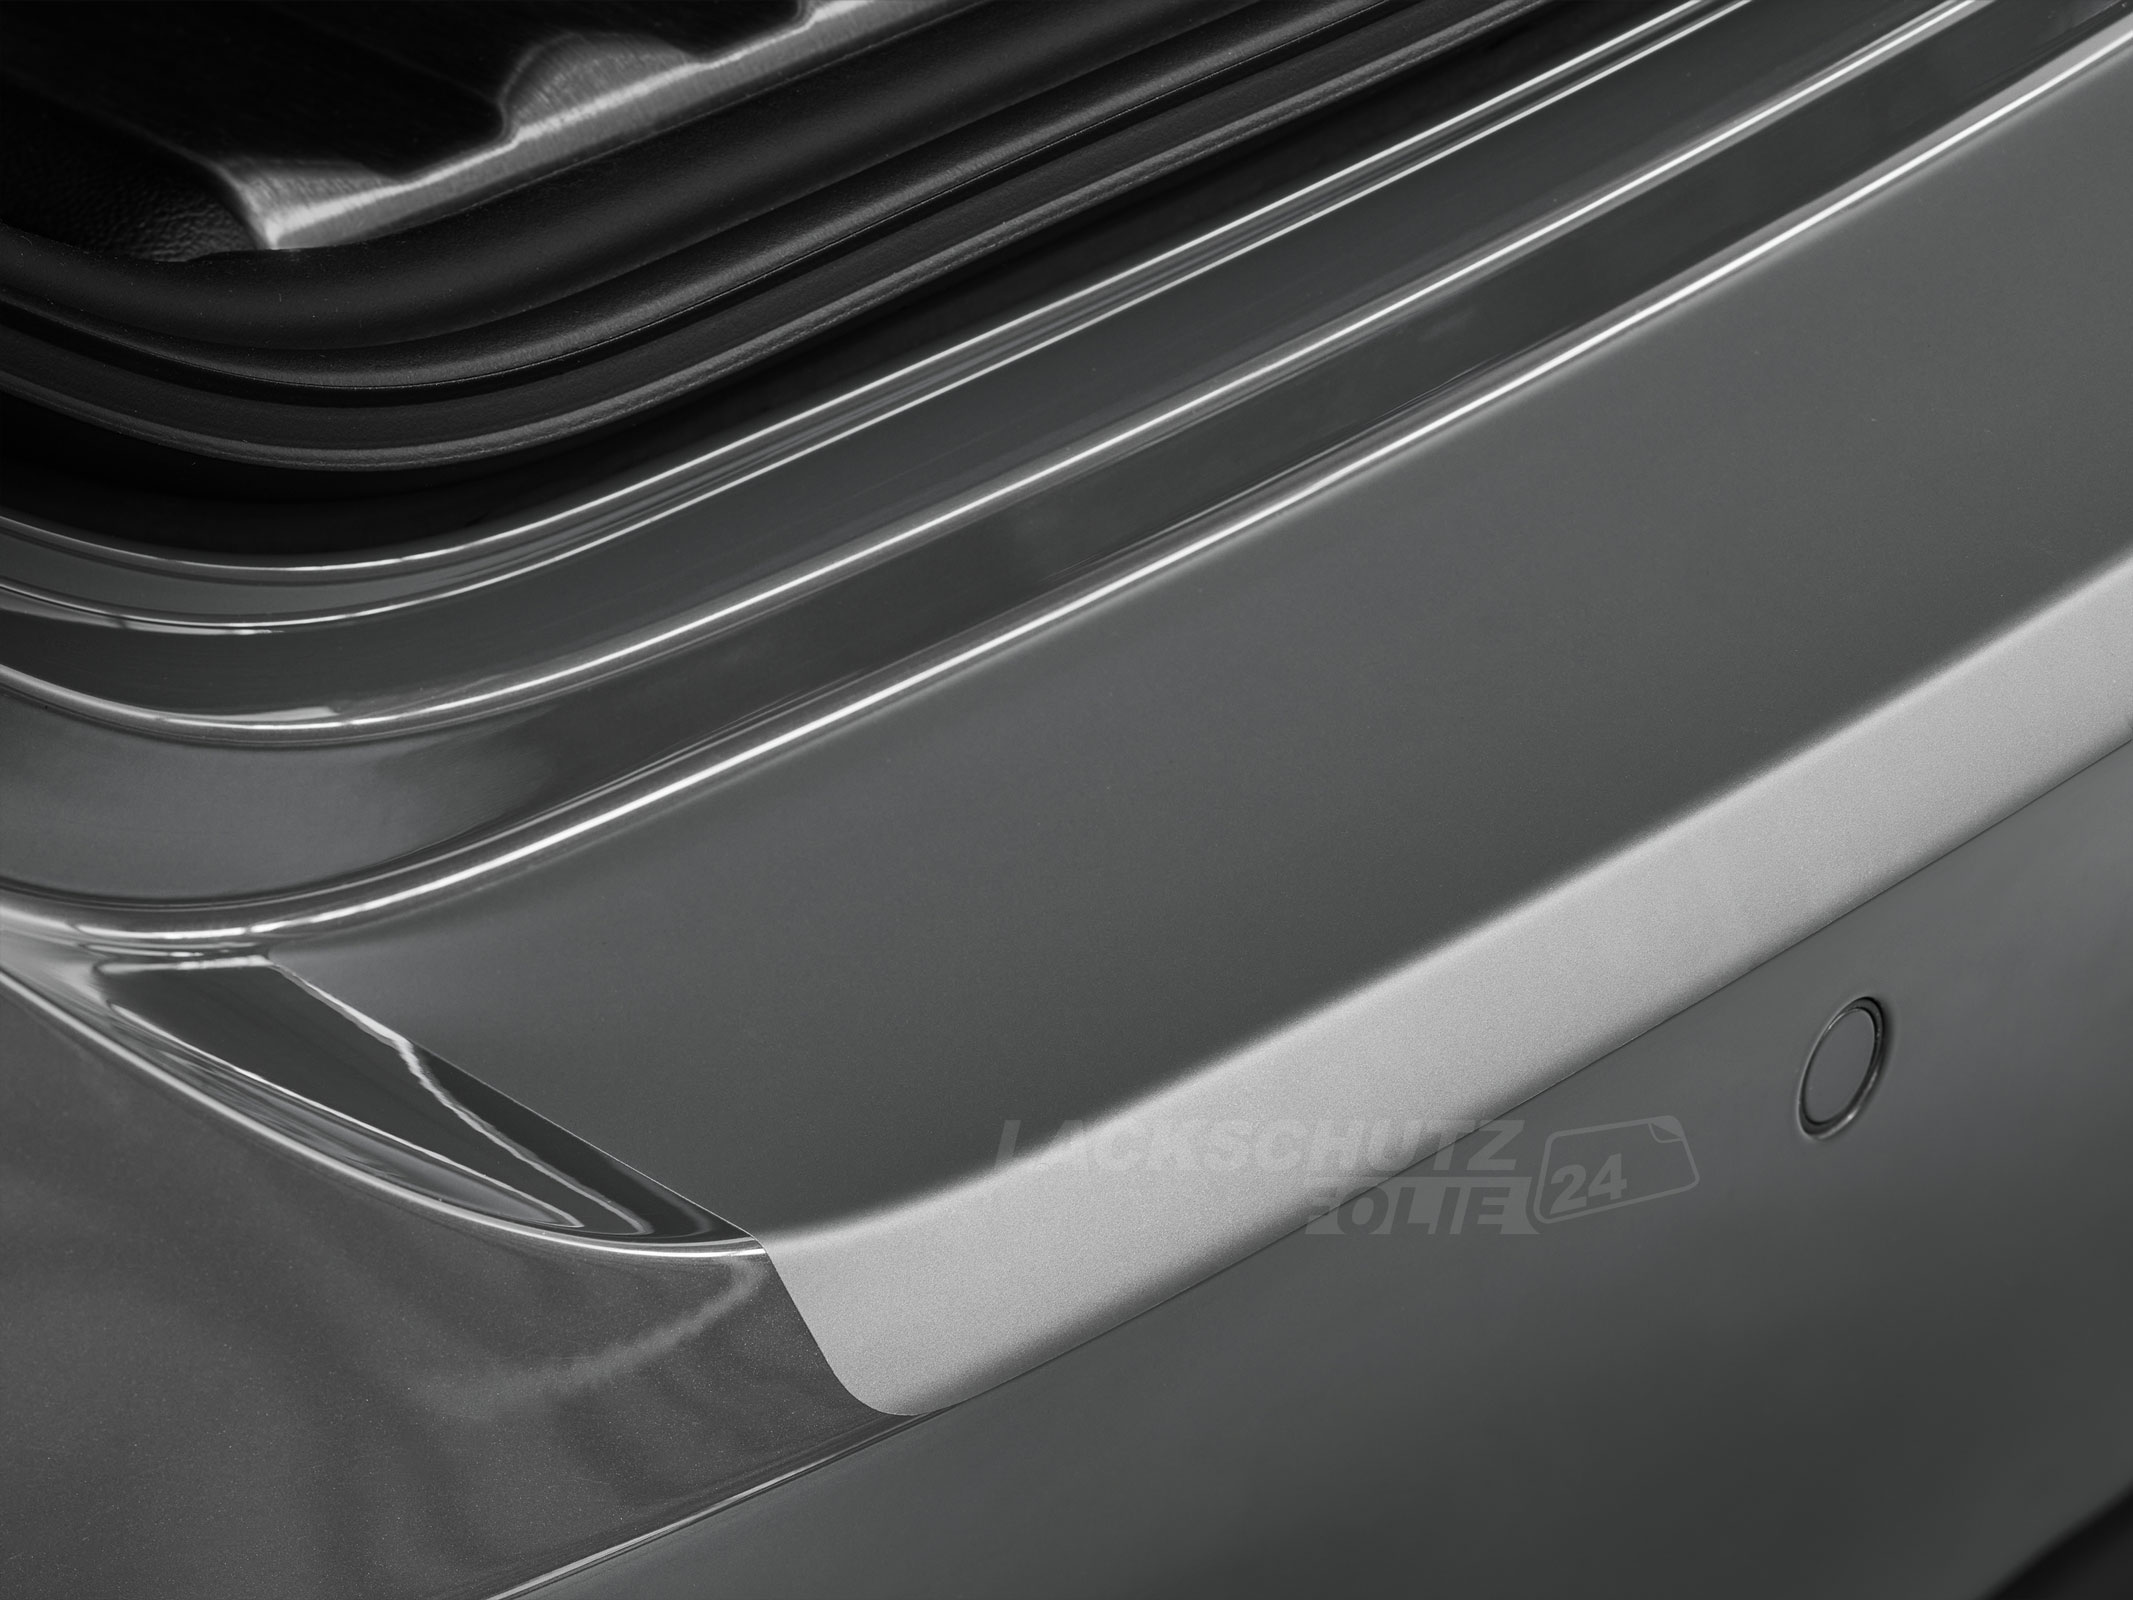 Ladekantenschutzfolie - Transparent Glatt MATT 110 µm stark  für BMW 2er Cabrio Typ F23, BJ 09/2014-2021